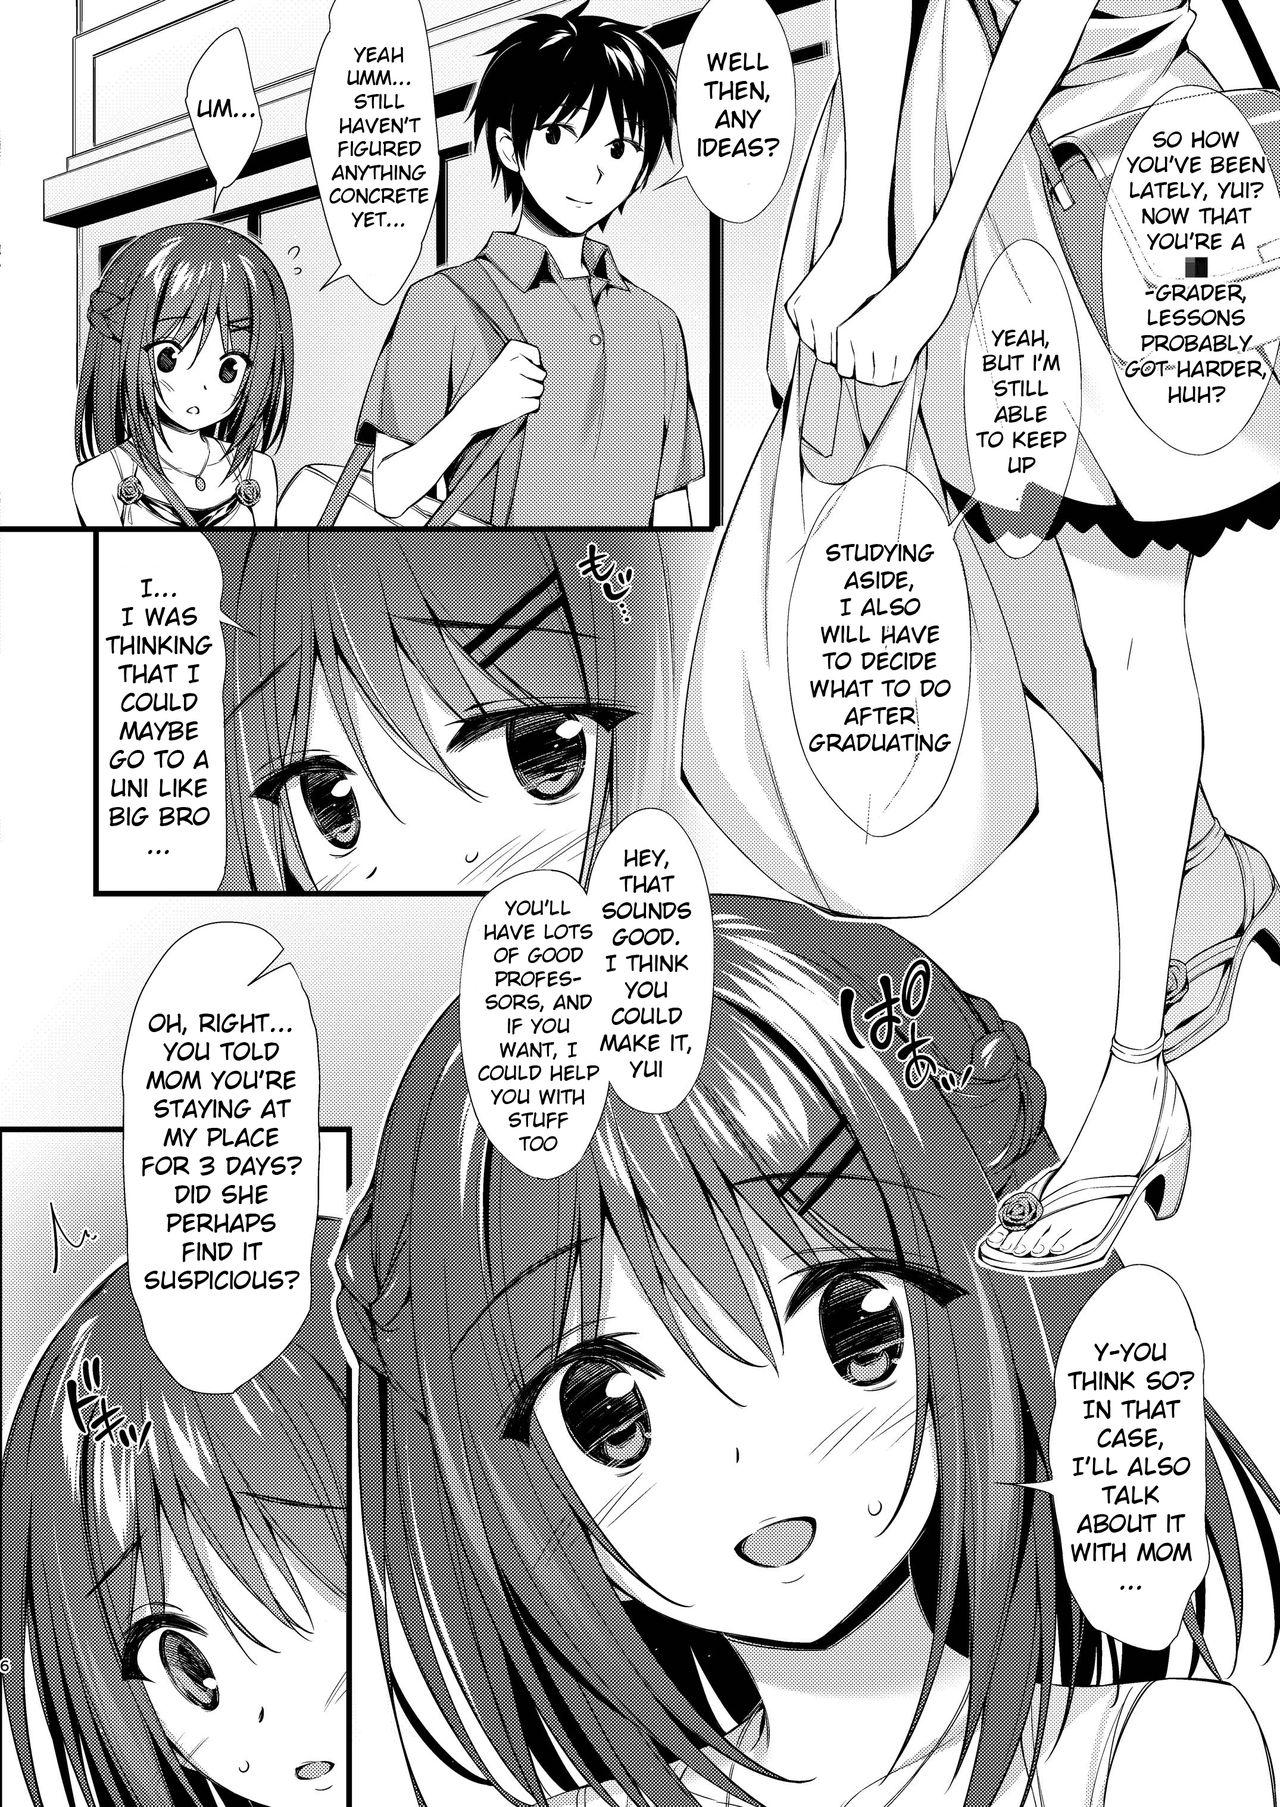 Making Love Porn Watashi wa Onii-chan to Tsukiaitai. - Original Nudes - Page 5